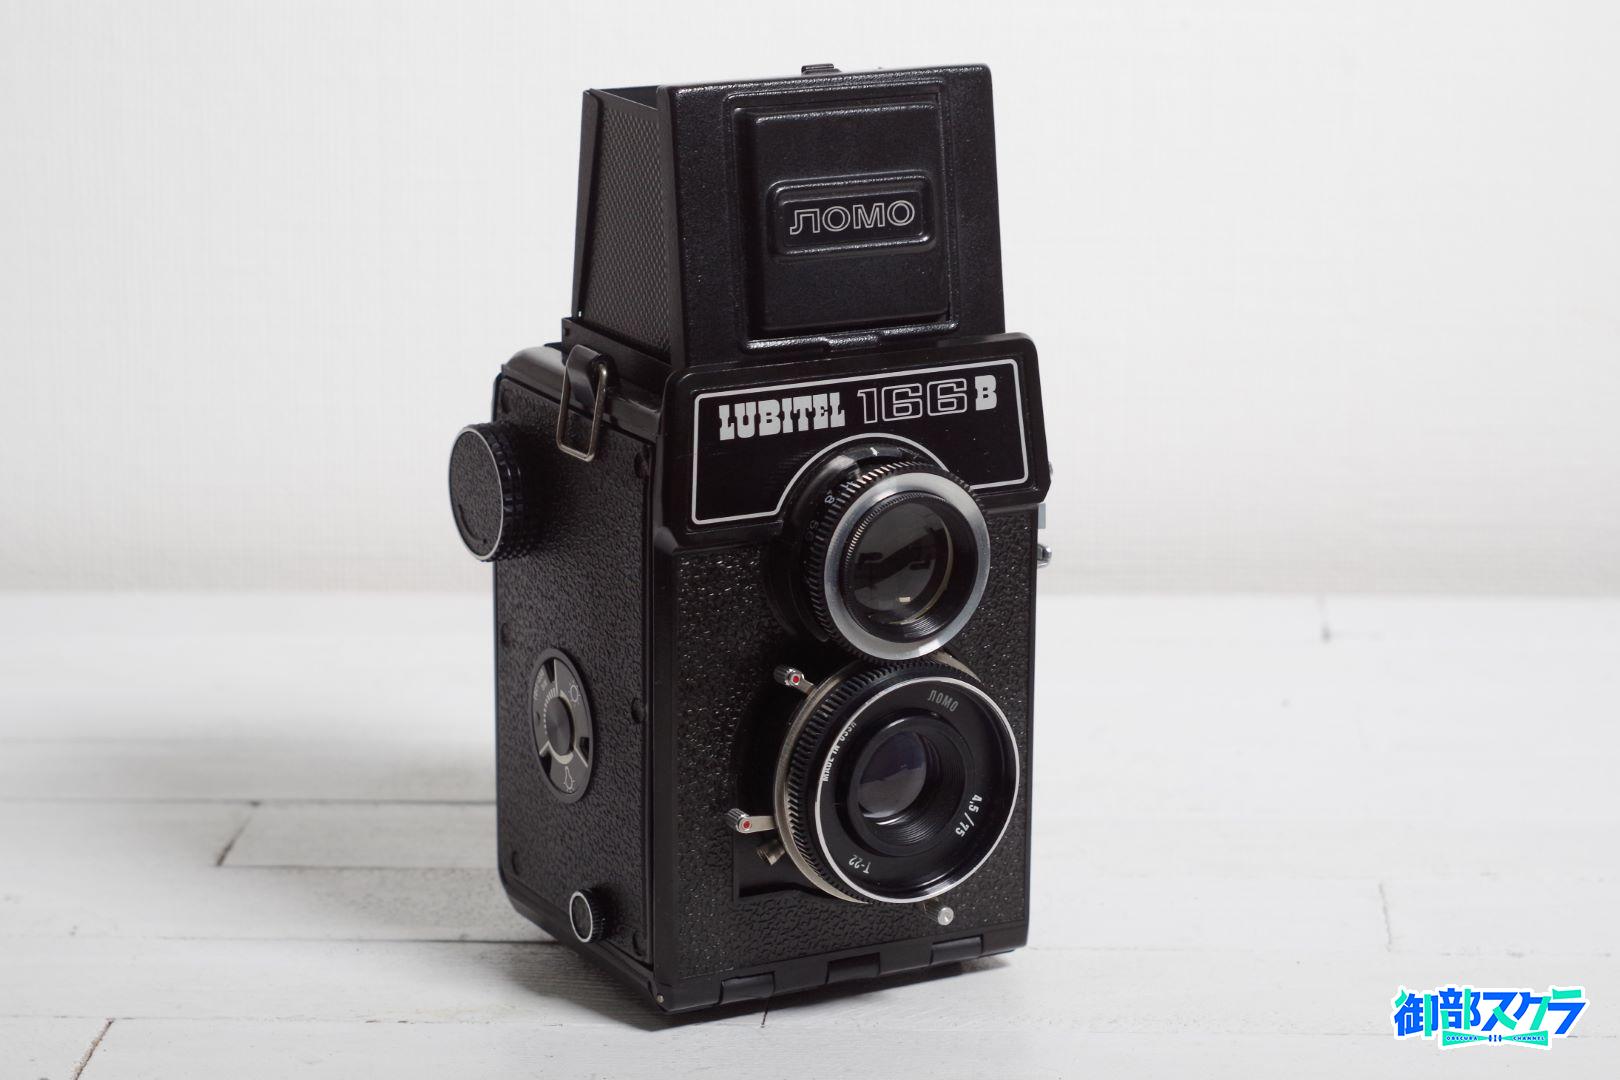 LUBITEL 166B マニア以外にも好まれた旧ソ連製二眼レフカメラ – 御部 